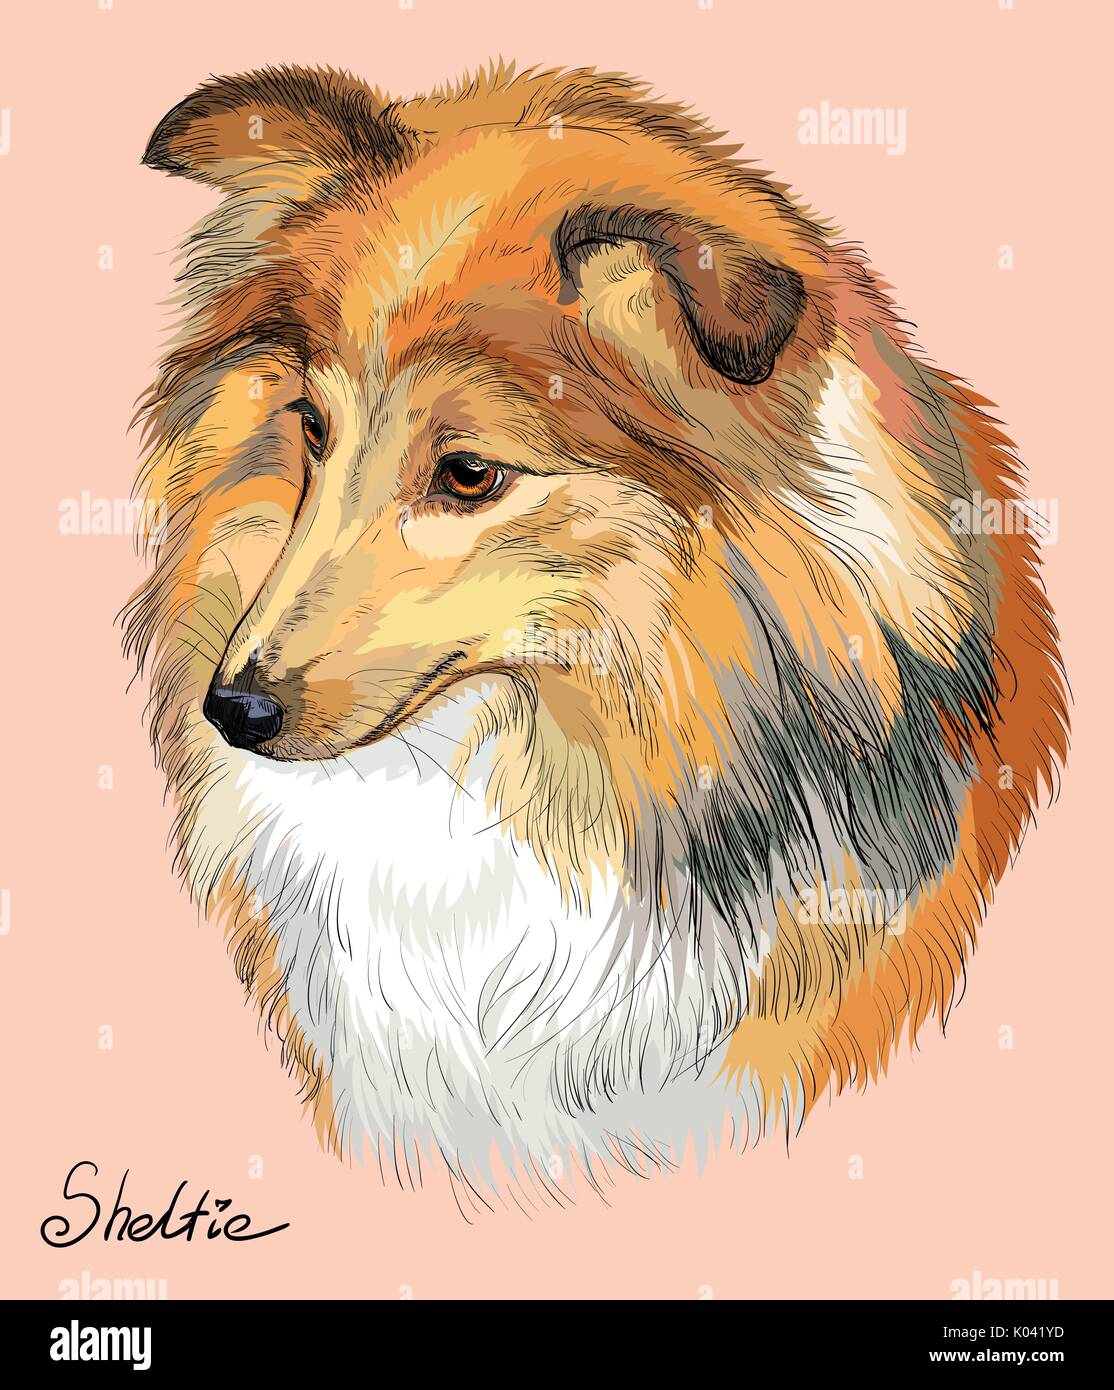 Sheltie (Shetland sheepdog) Vektor hand Zeichnung Illustration in verschiedenen Farben auf rosa Hintergrund Stock Vektor